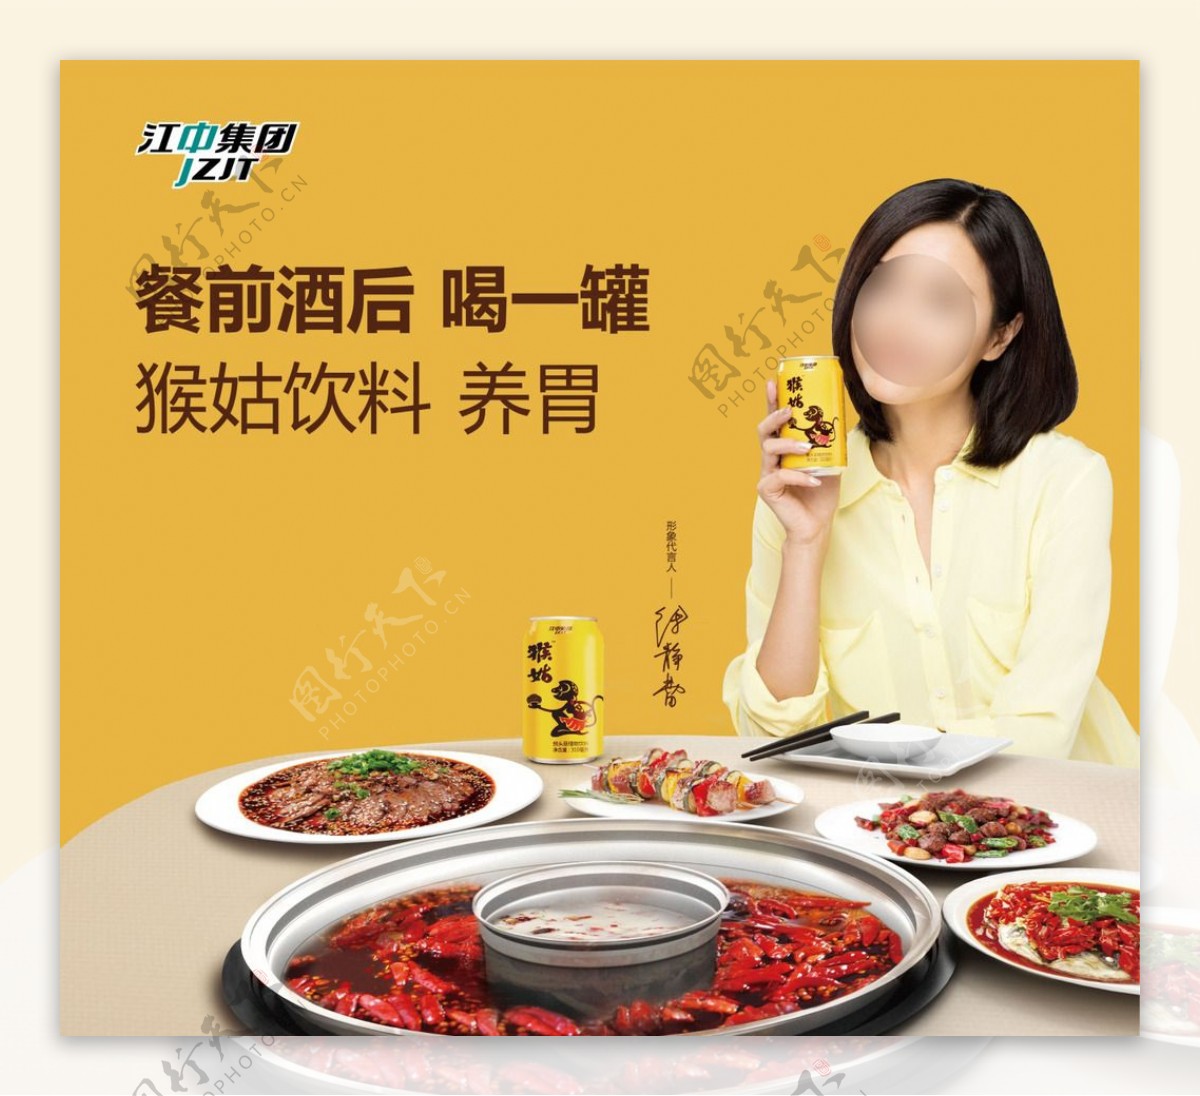 猴姑饮料广告餐桌篇